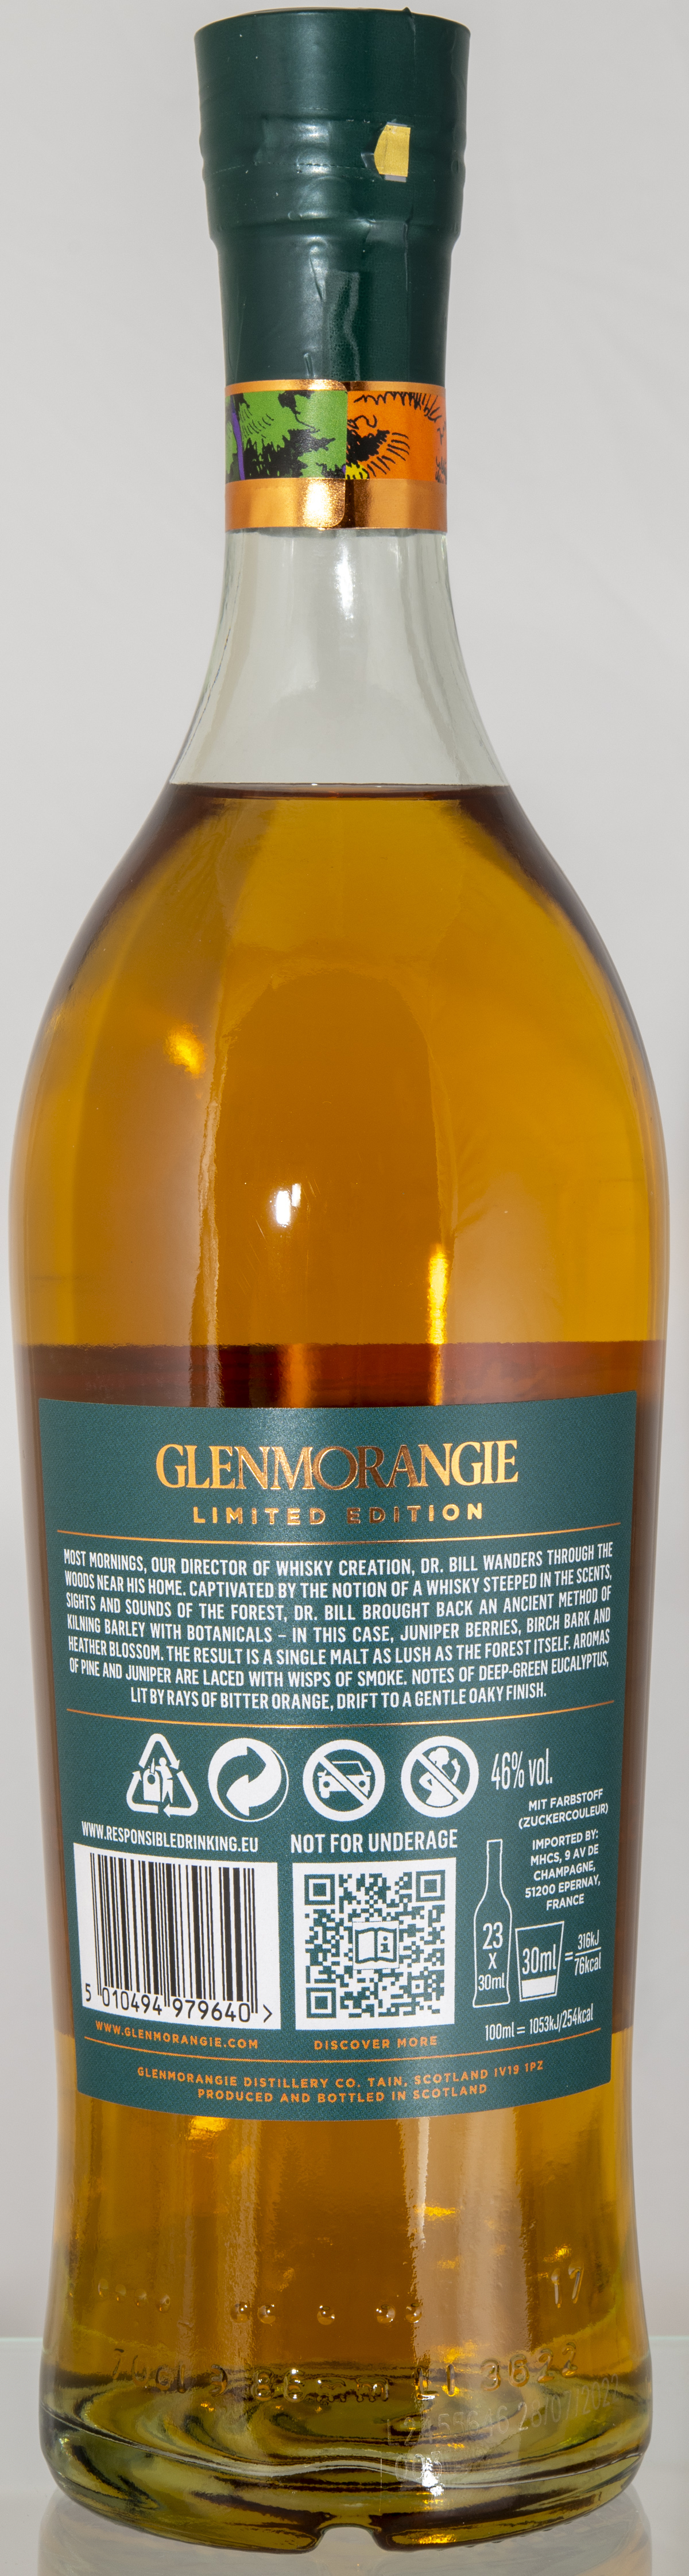 Billede: D85_8295 - Glenmorangie A Tale of Forest - bottle back.jpg